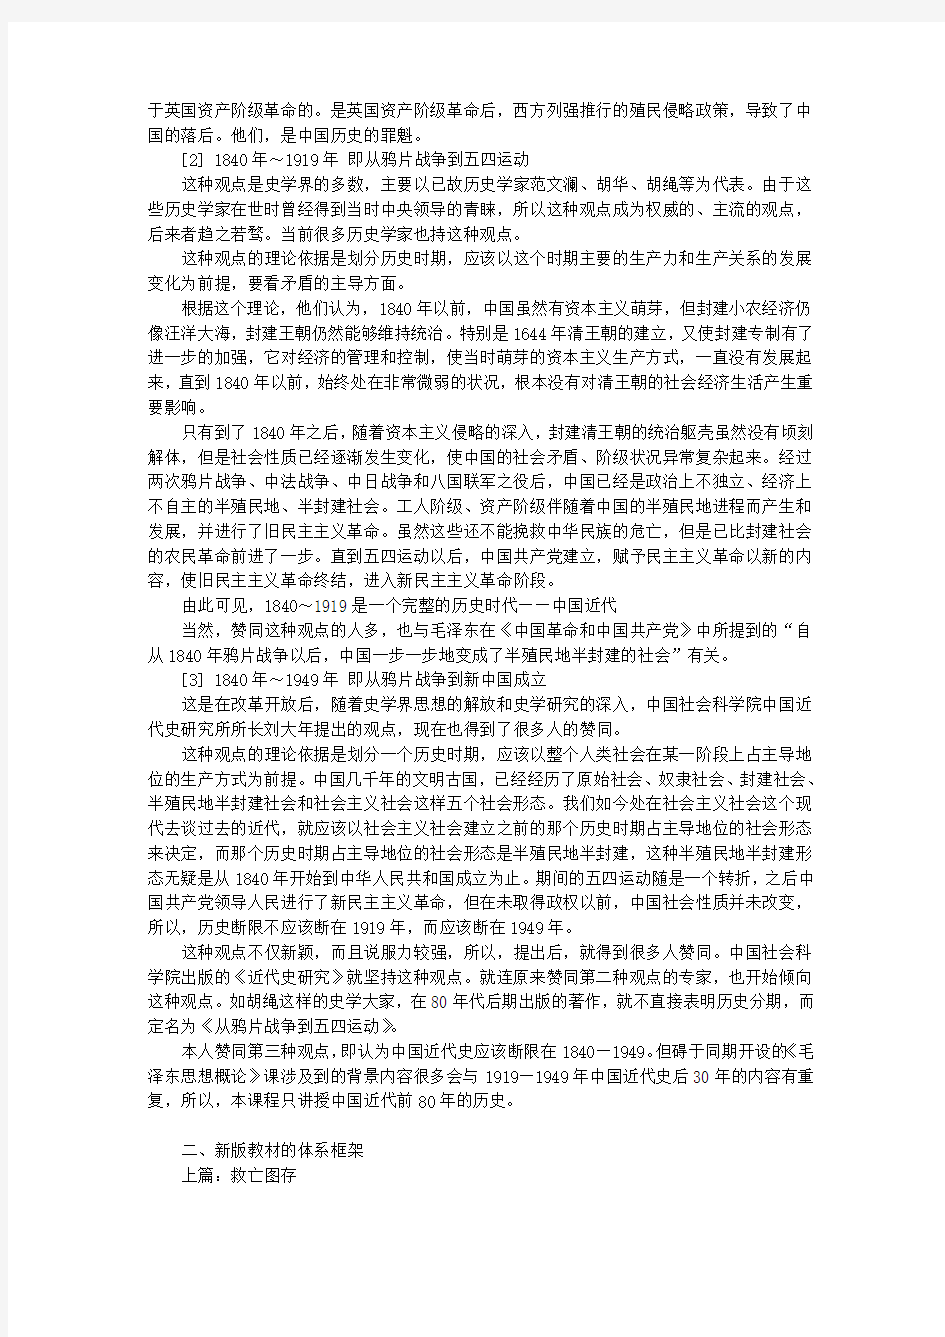 《中国近现代史纲要》教案(绪论、第一、二章)